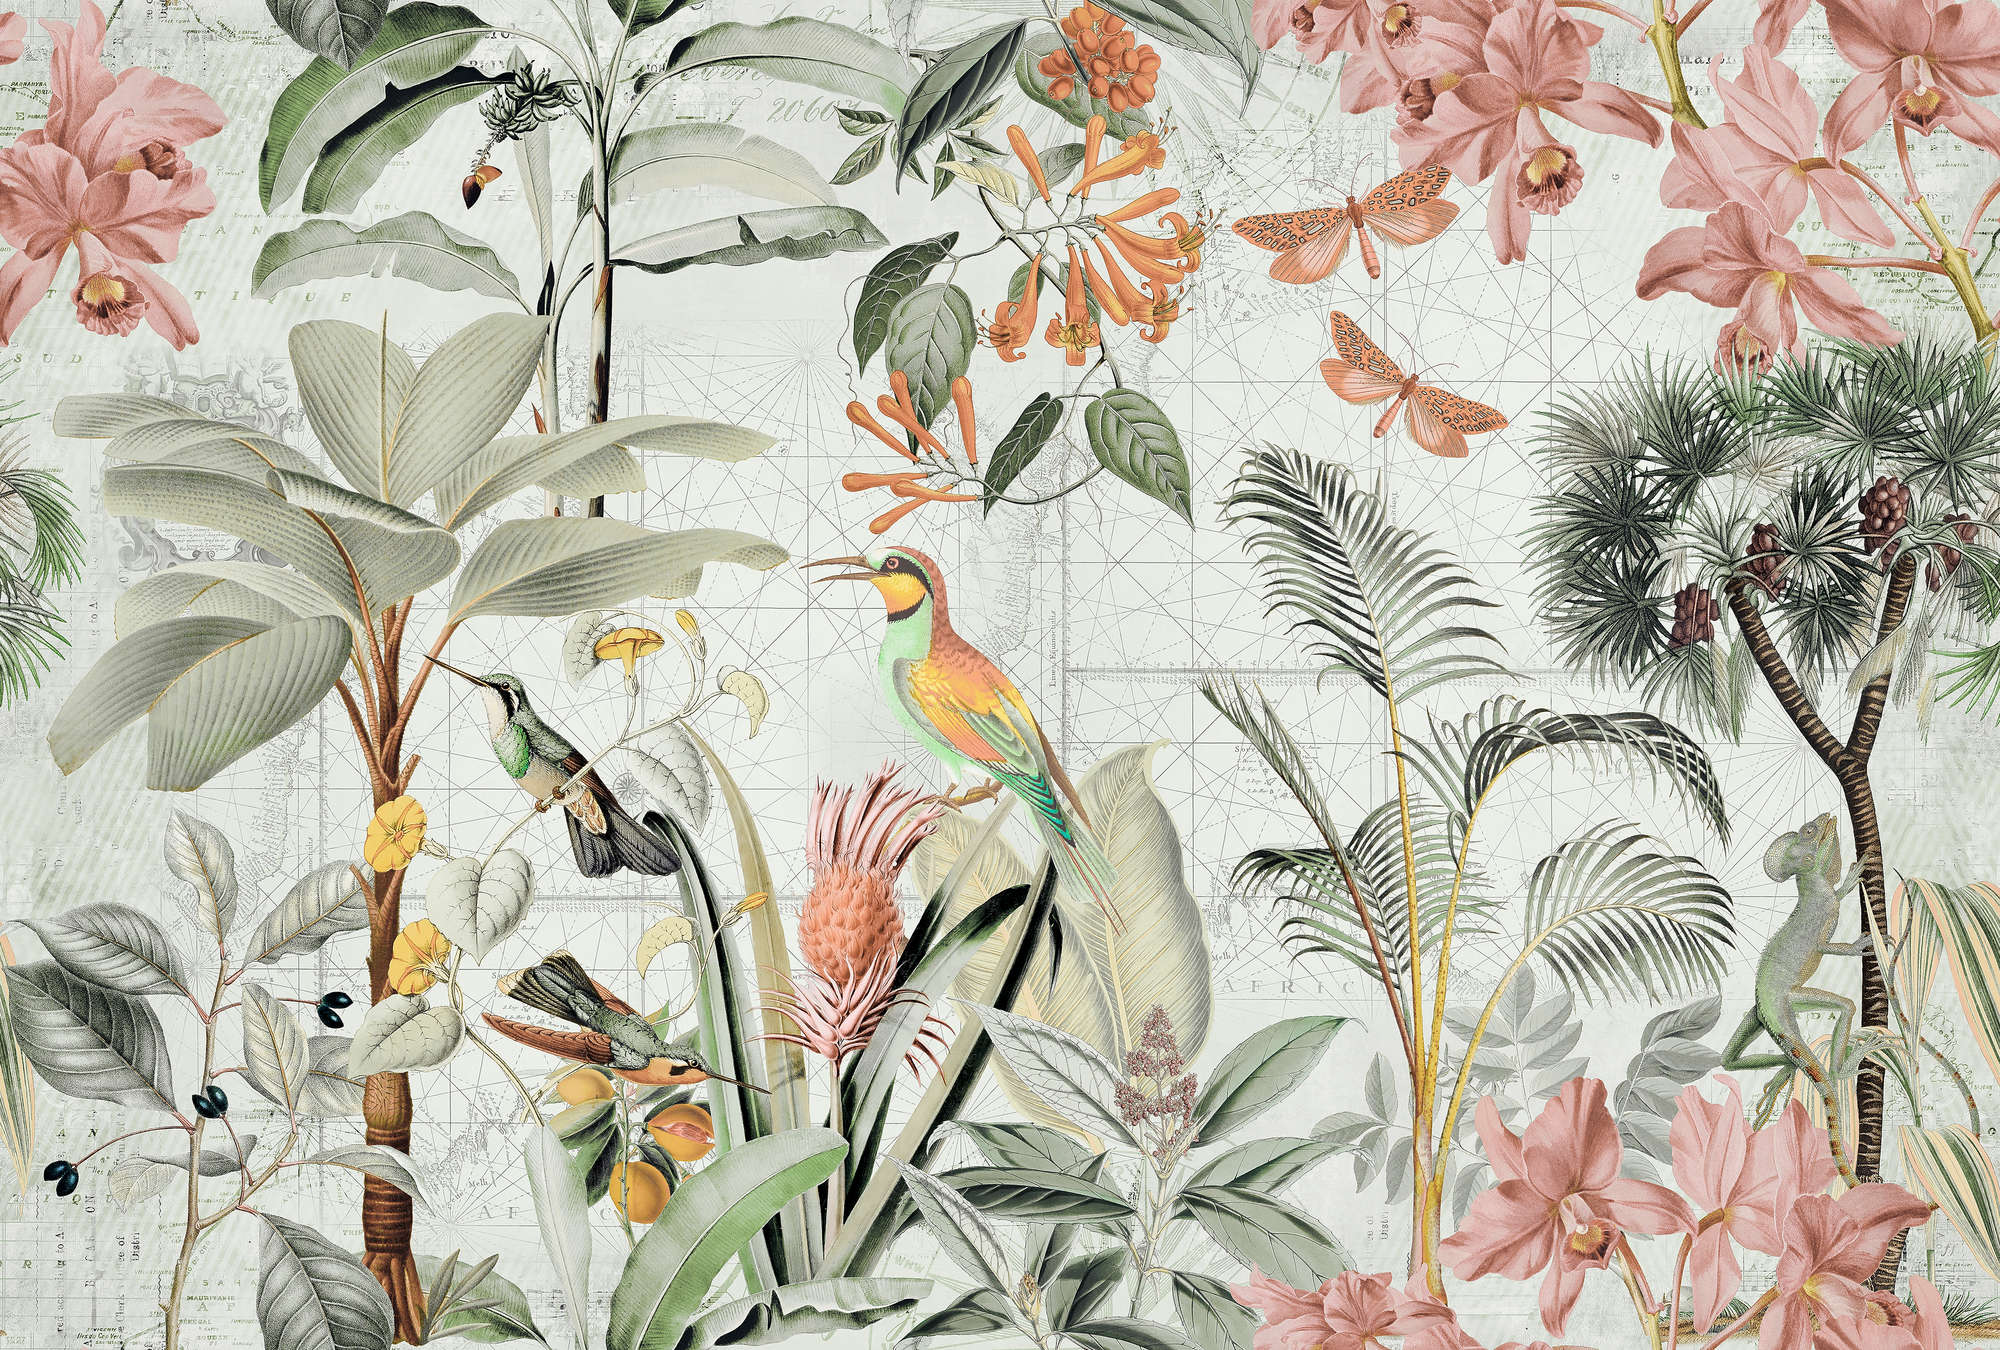             Fototapete Dschungel Collage mit Tropen Blumen & Vögeln
        